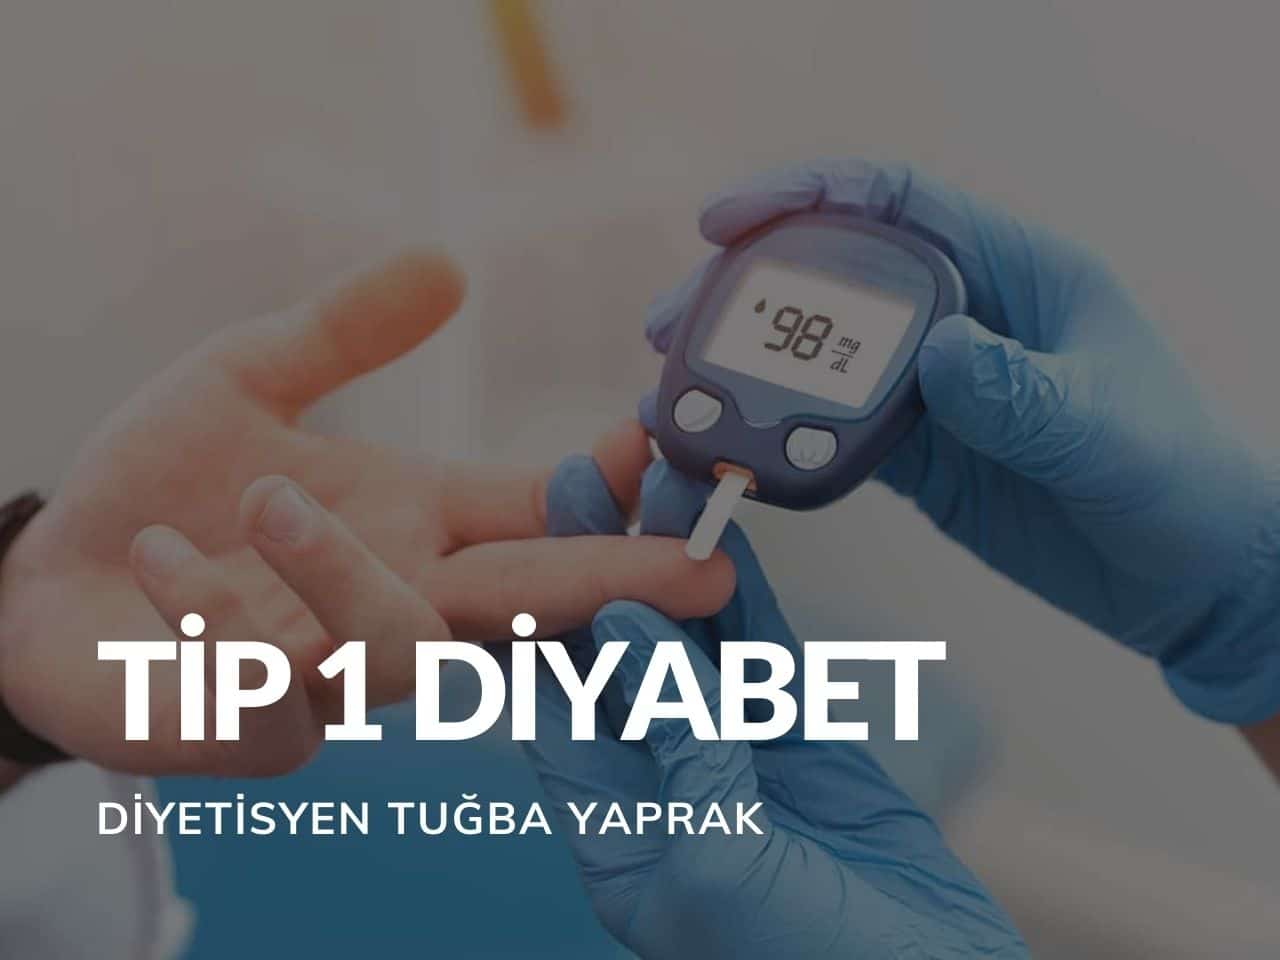 Tip 1 Diyabet